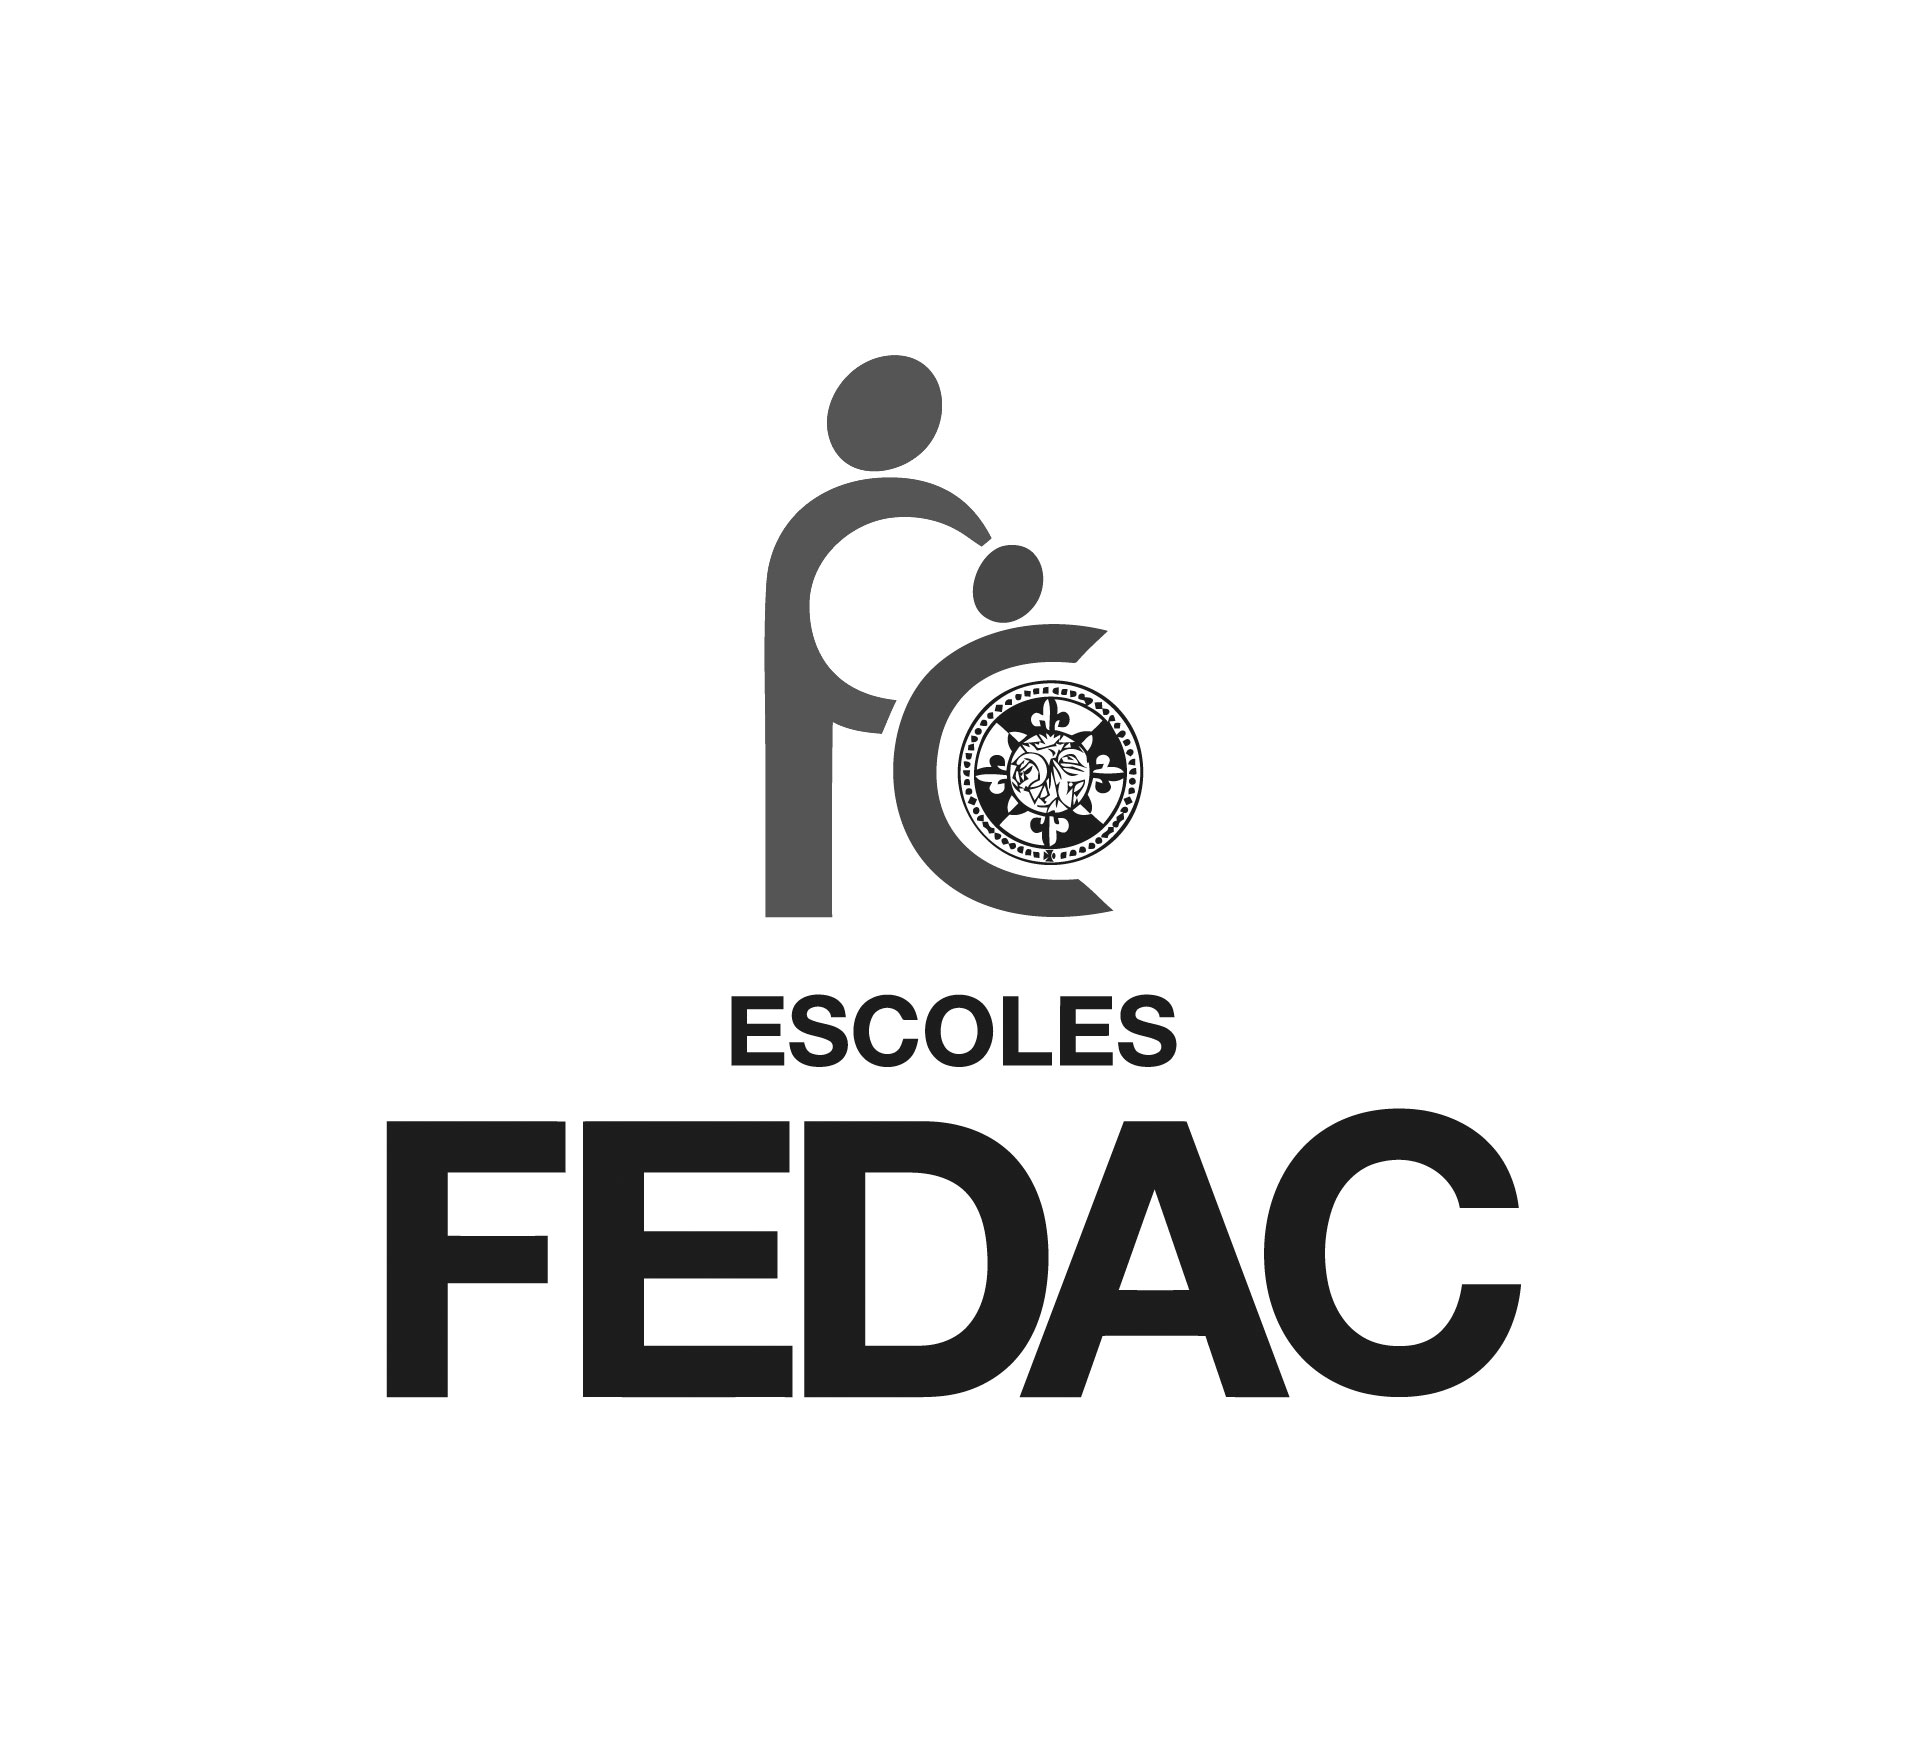 FEDAC